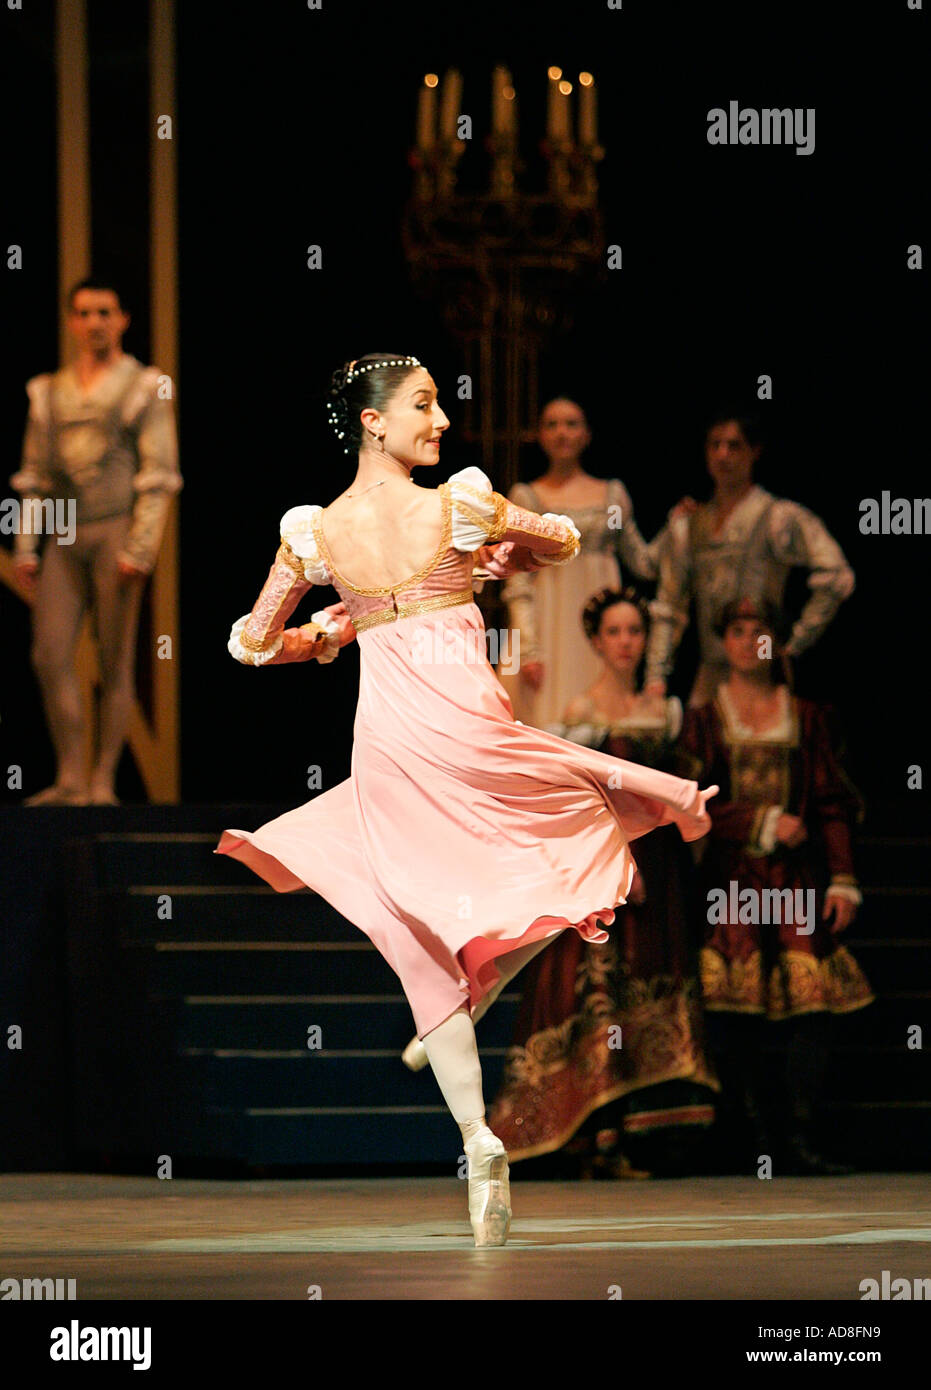 Romeo e Giulietta ballerina ballerina attrice performance sul palco  National Ballet del Teatro dell opera di cultura arte equilibrio danza tutu  Foto stock - Alamy